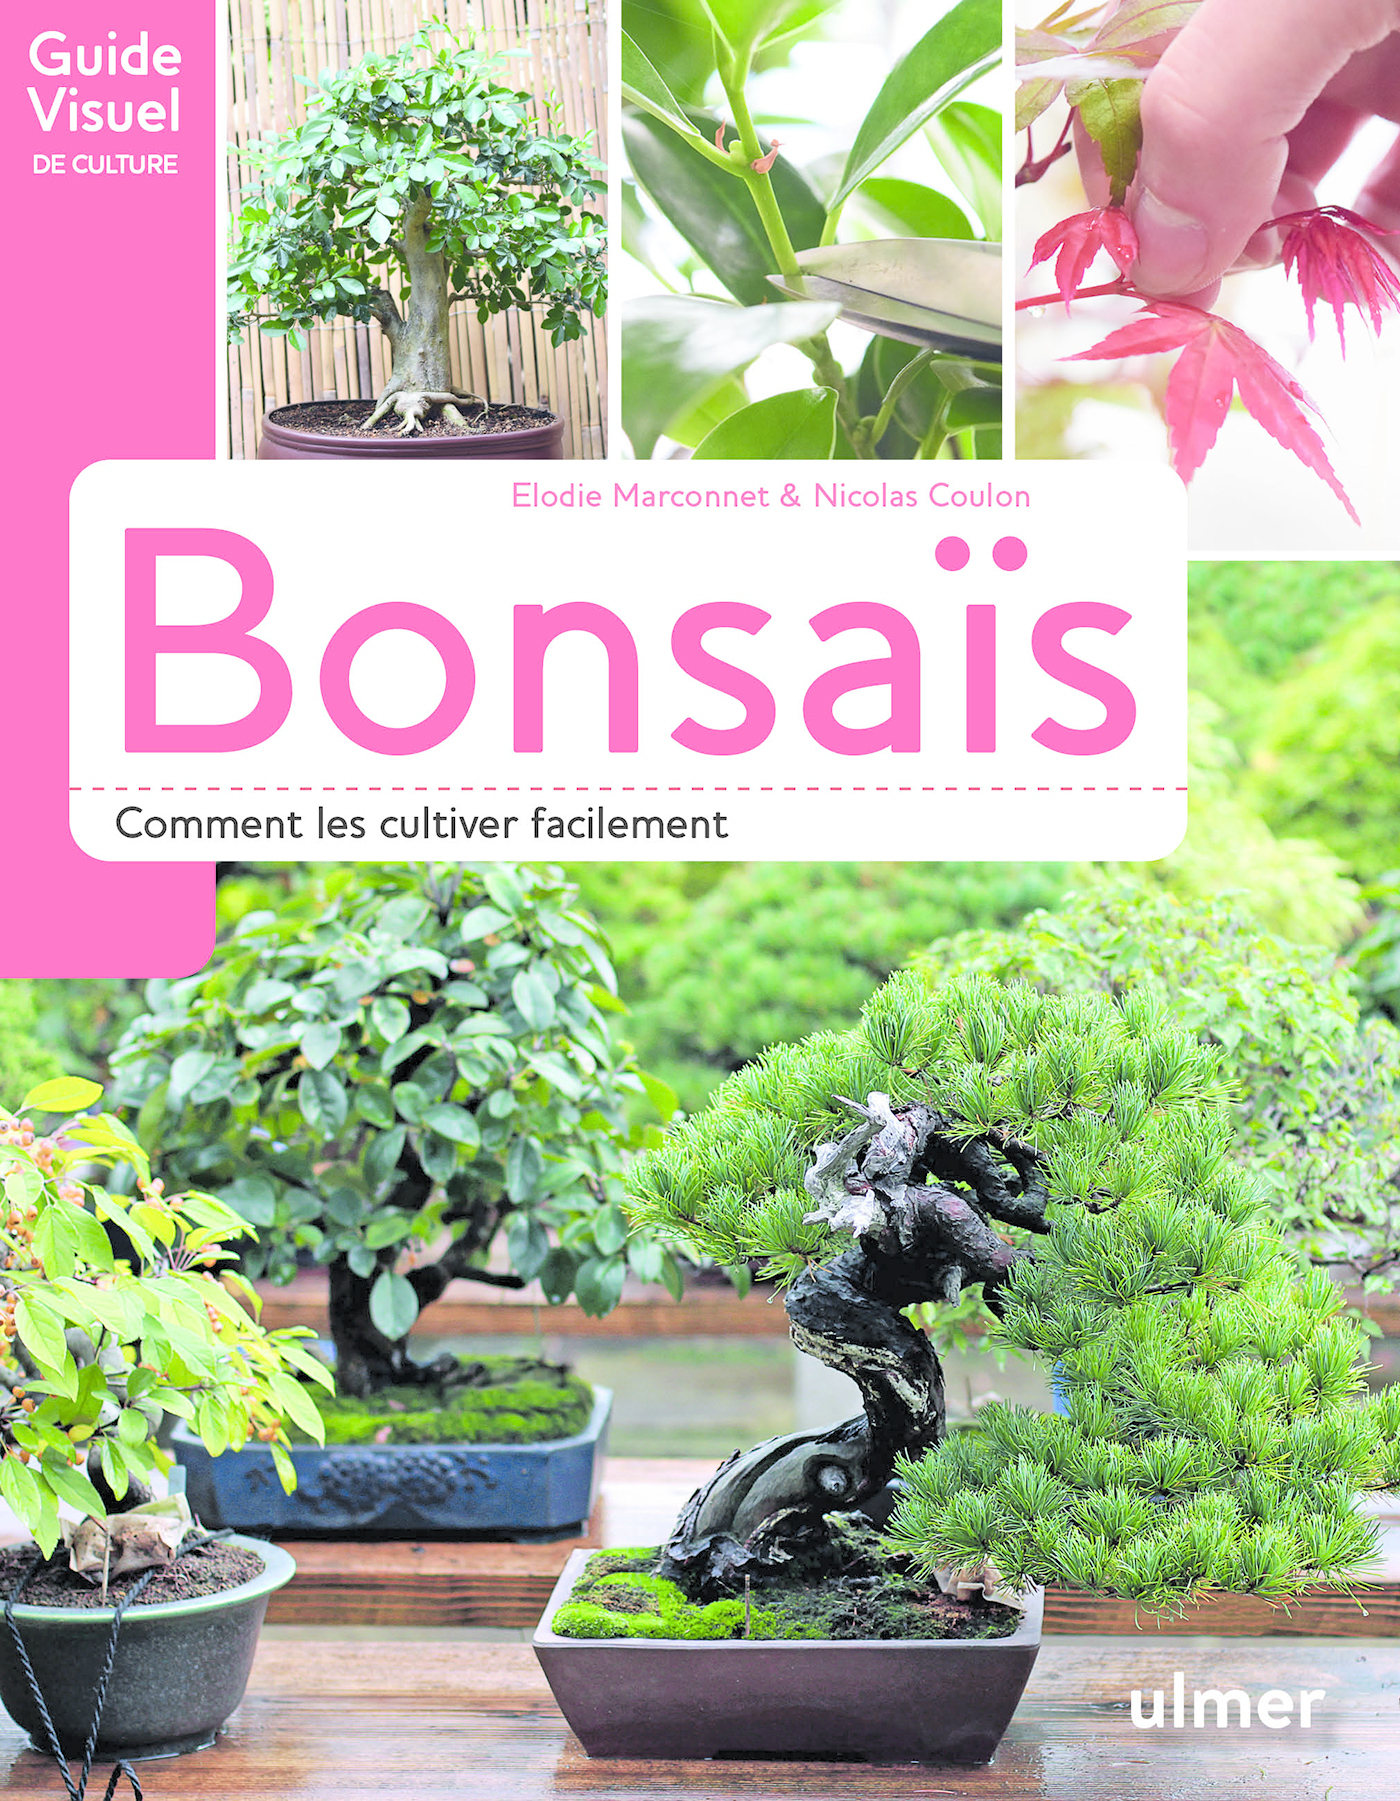 🇯🇵 Arrivage de superbes bonsaï dans - Jardiland Langres